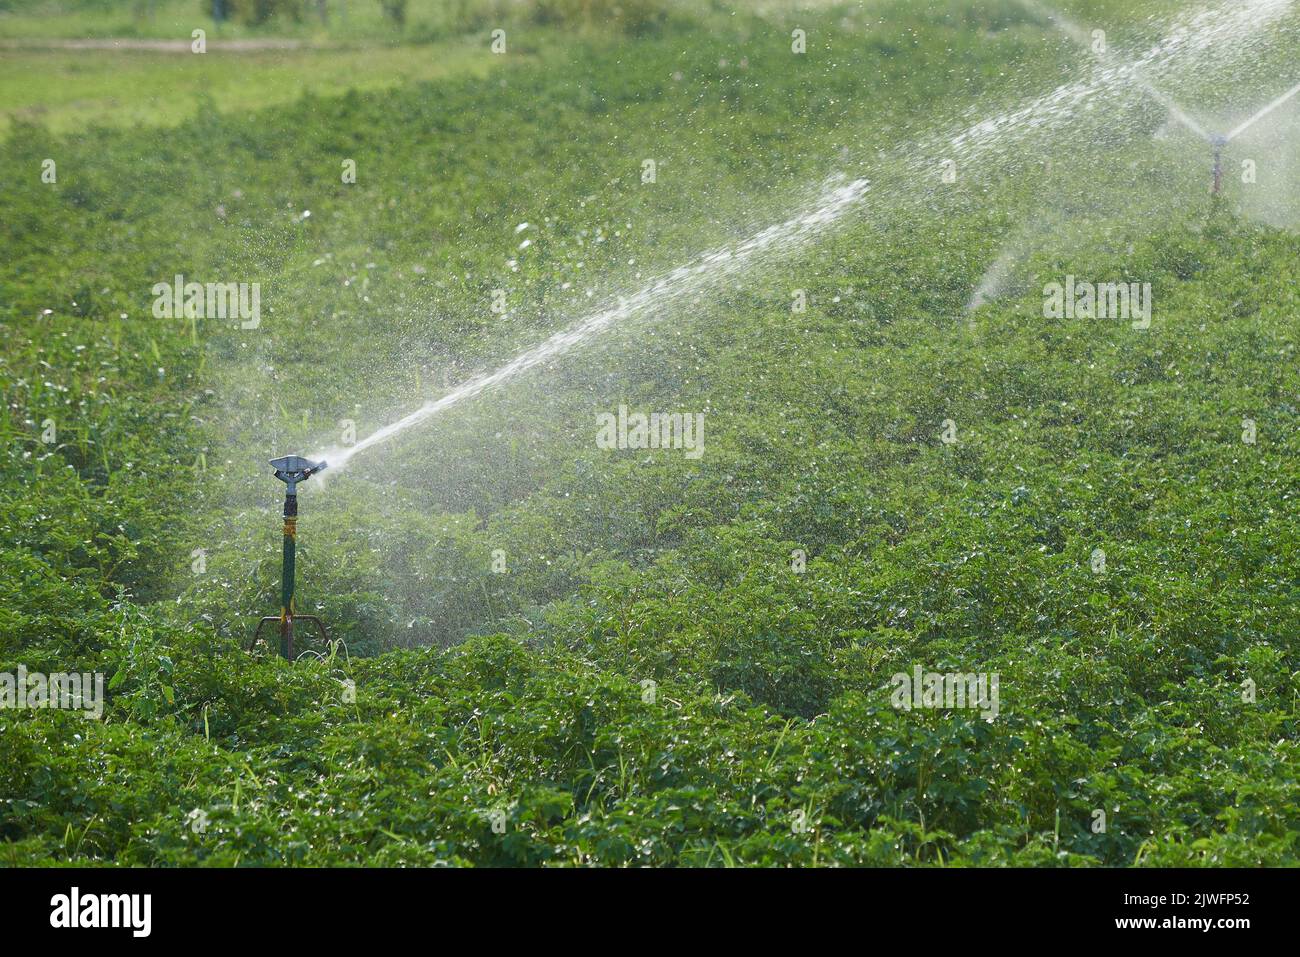 Sistema de riego de campo en el cultivo industrial de hortalizas Foto de stock